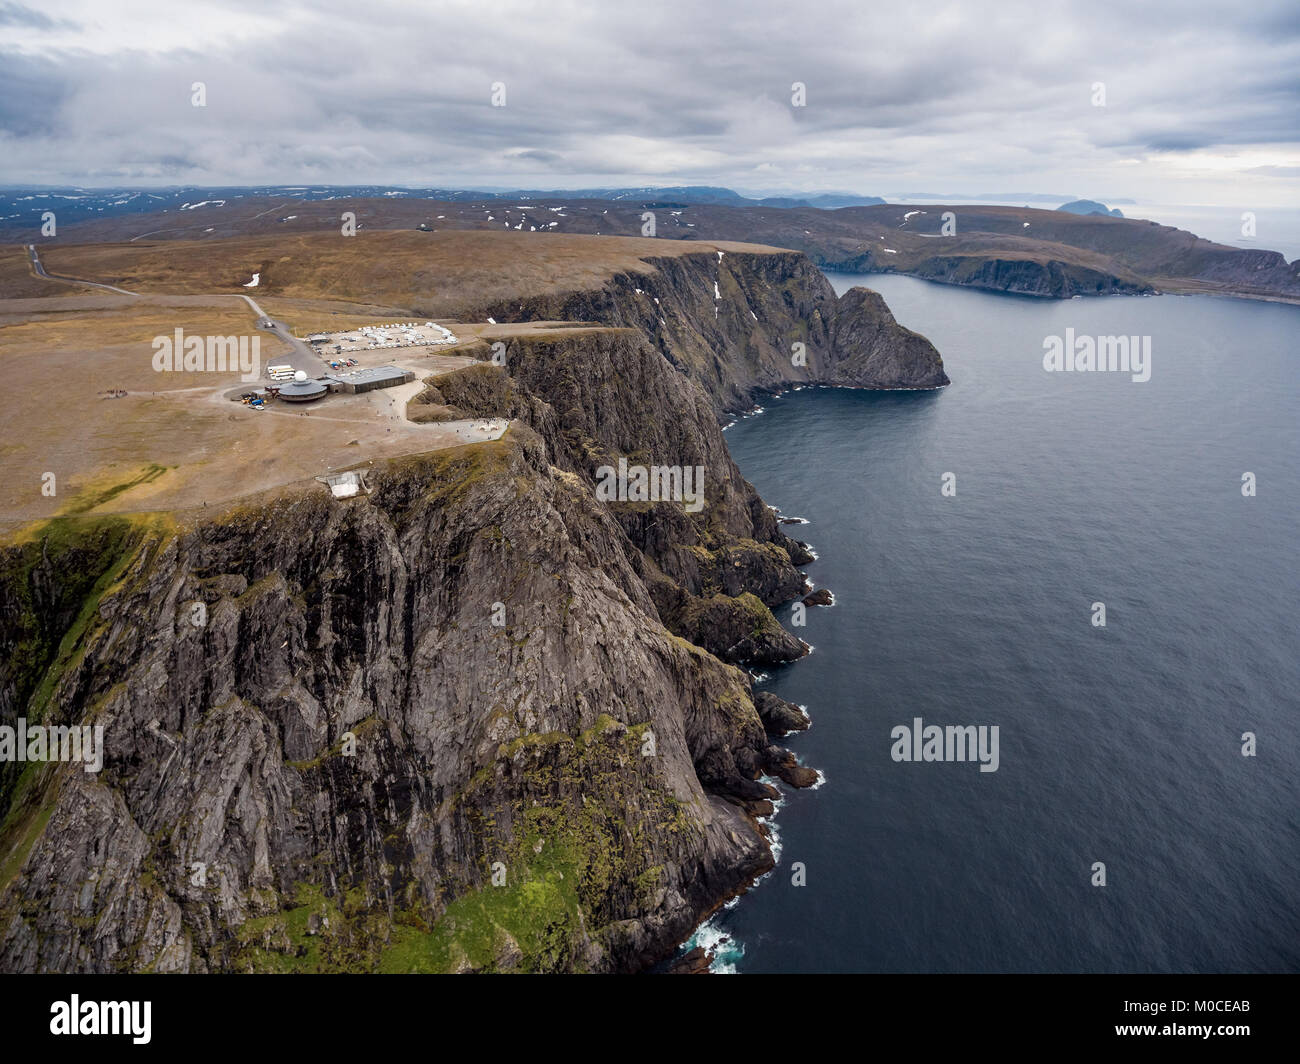 La côte de la mer de Barents le Cap nord (Nordkapp) dans le nord de la Norvège, la photographie aérienne. Banque D'Images